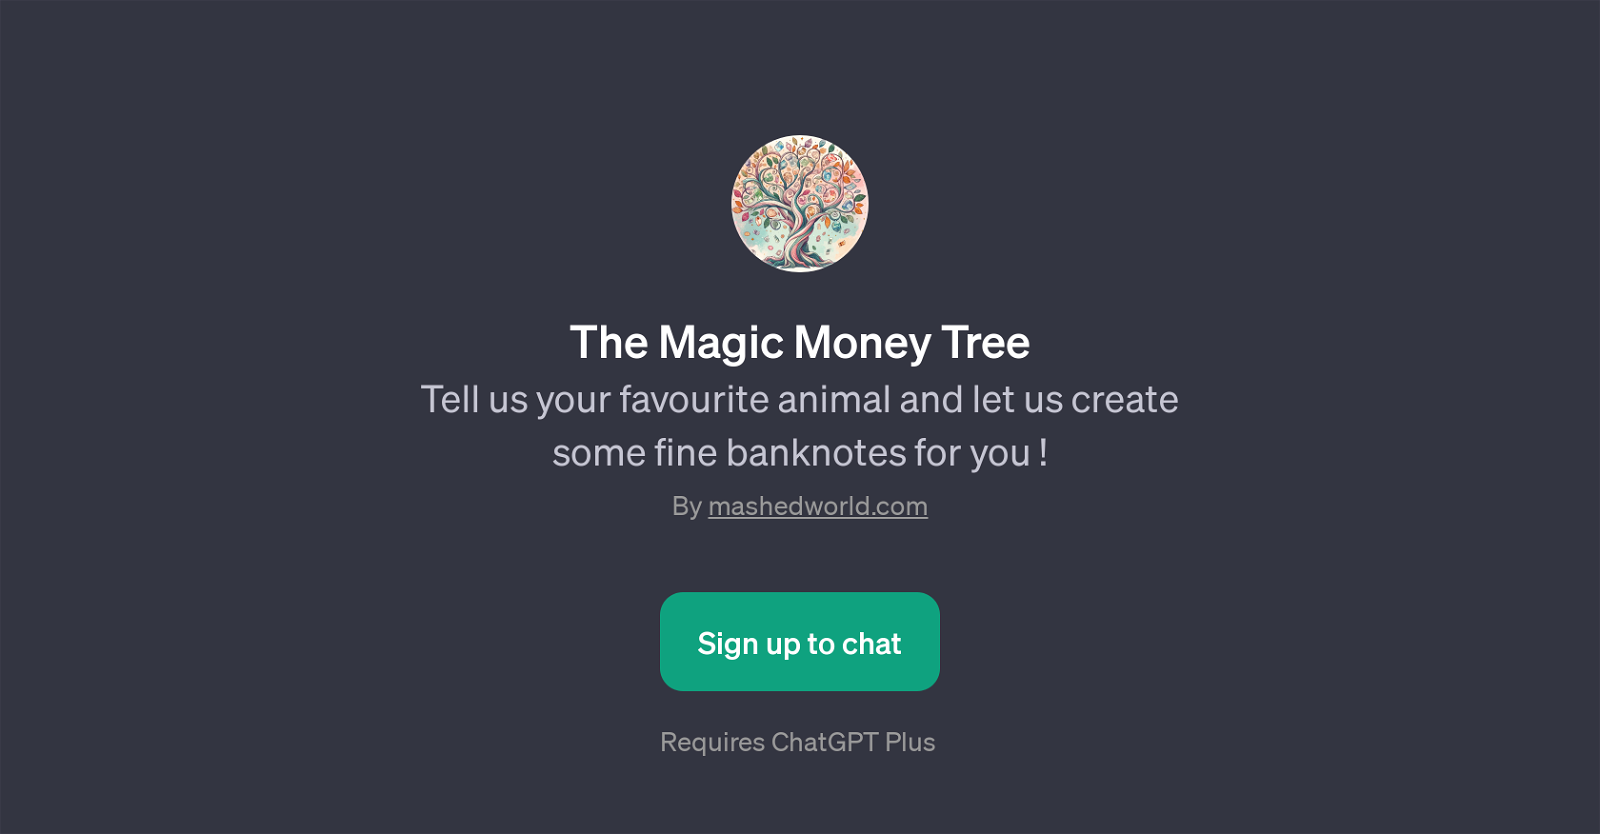 The Magic Money Tree website